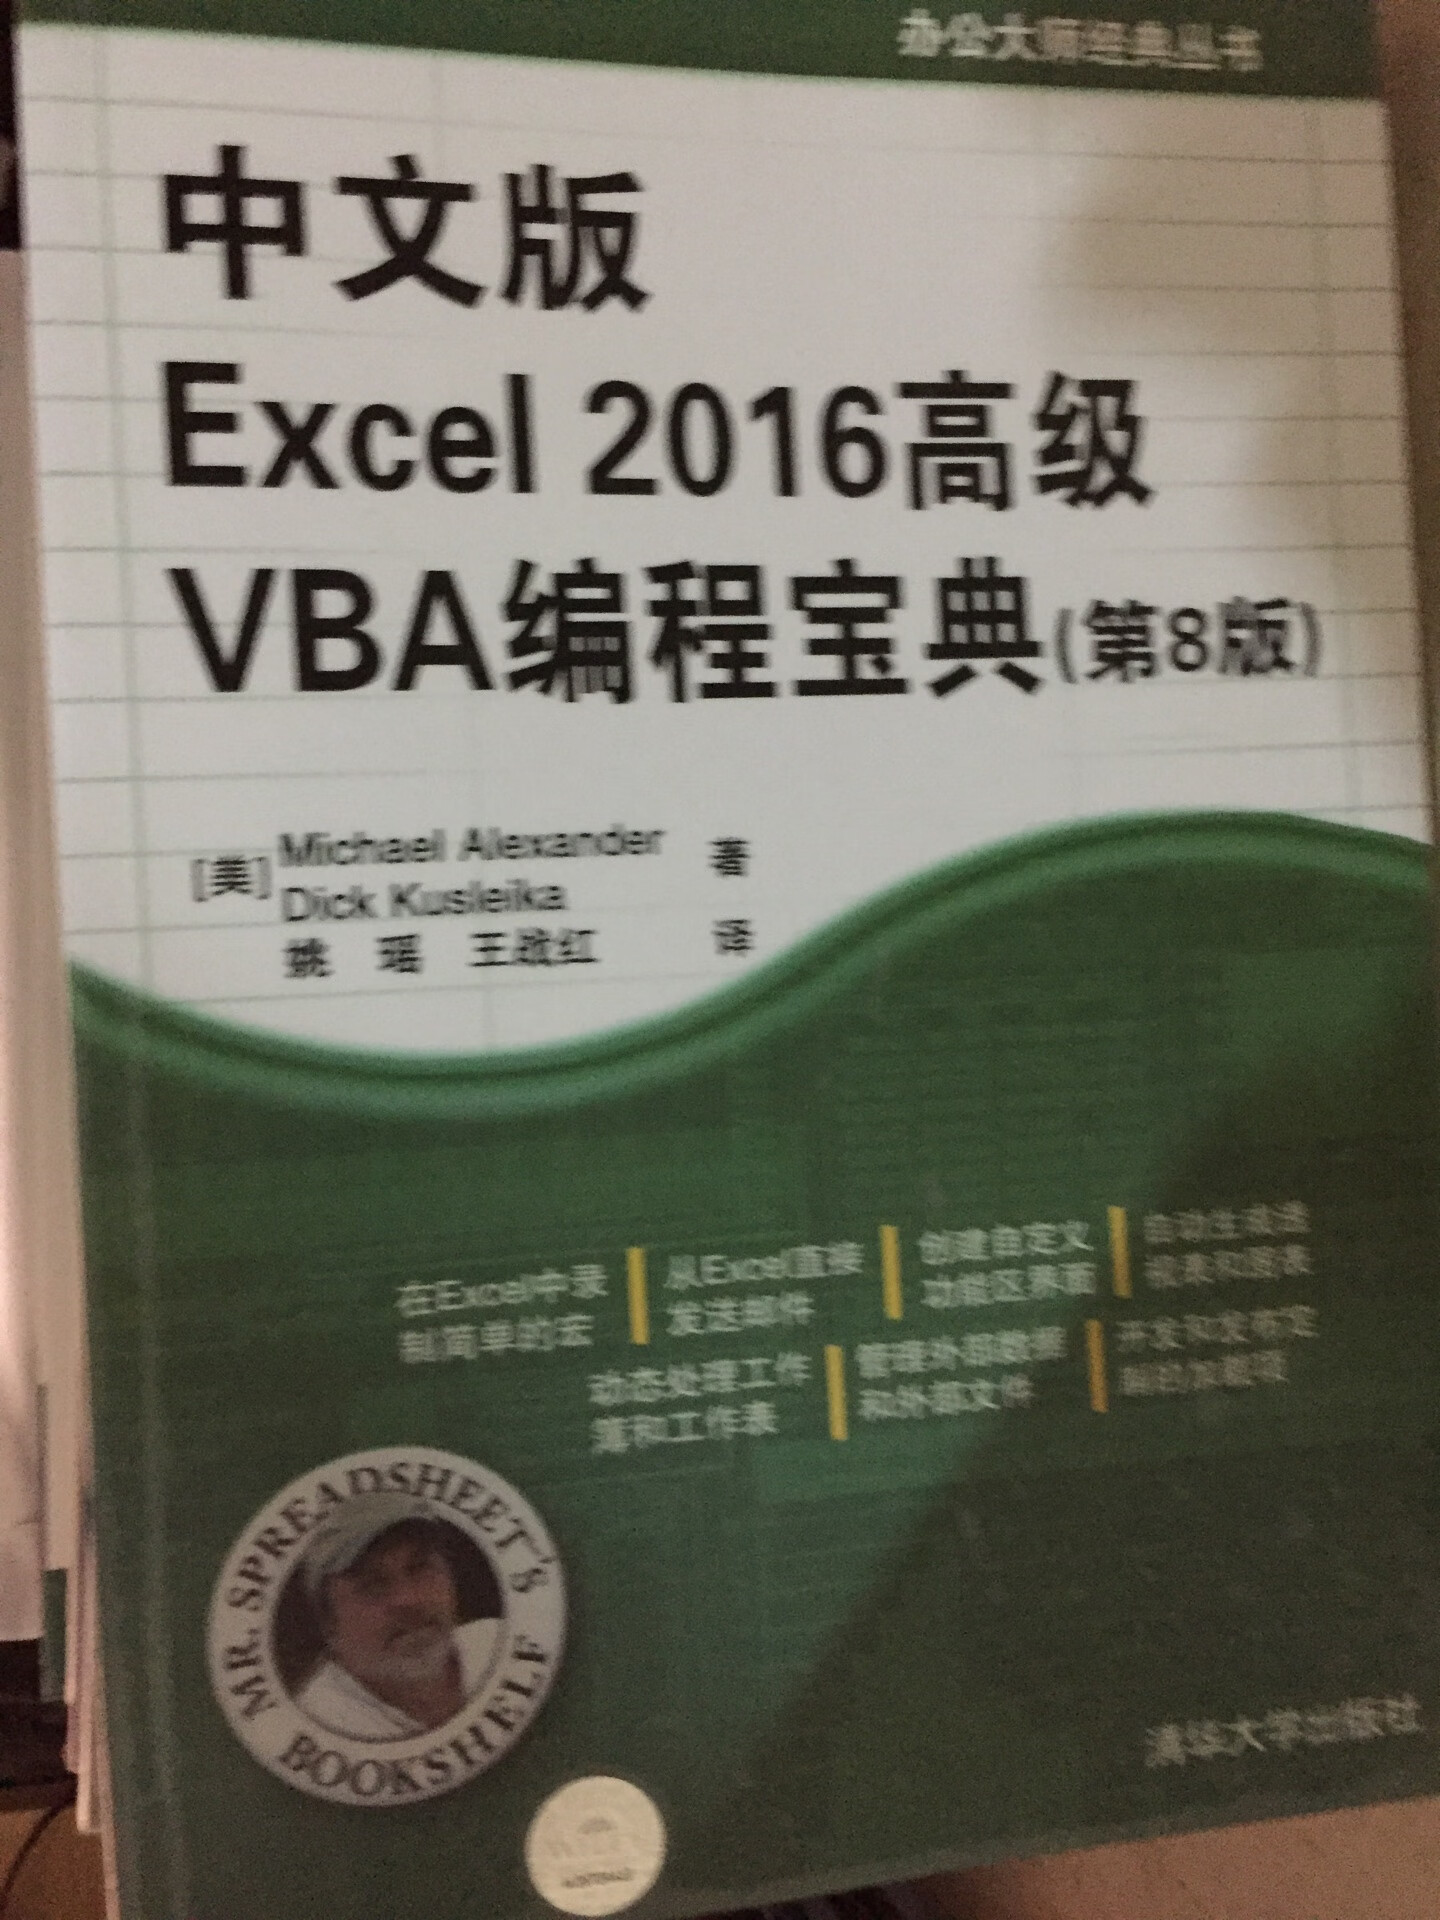 买来当工具书参考书，配合excel使用大全，搞一波Excel的vba为了以后能自己琢磨点小工具，缺点就是书本纸张太薄了。